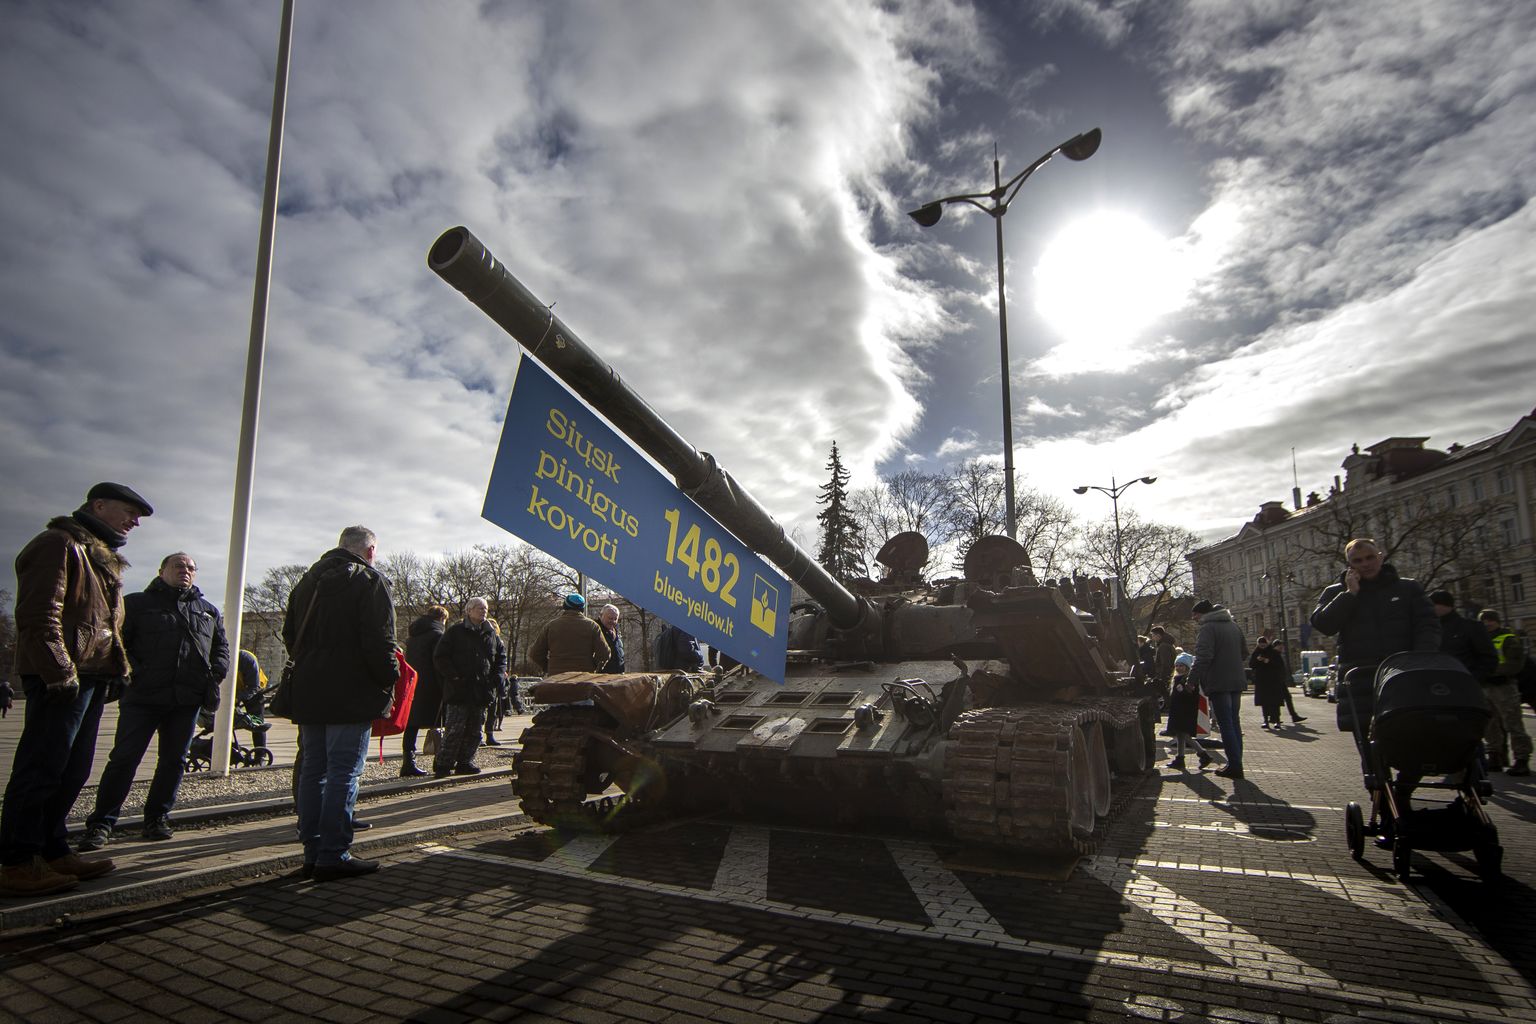 Venemaa Ukrainasse sissetungi esimese aastapäeva tähistamiseks toodi ka Vilniuse keskväljakule põlenud tank. Vrakil on bänner «Saada raha võitluseks». Ka Vilniuses lõi see tank inimesed kahte leeri.